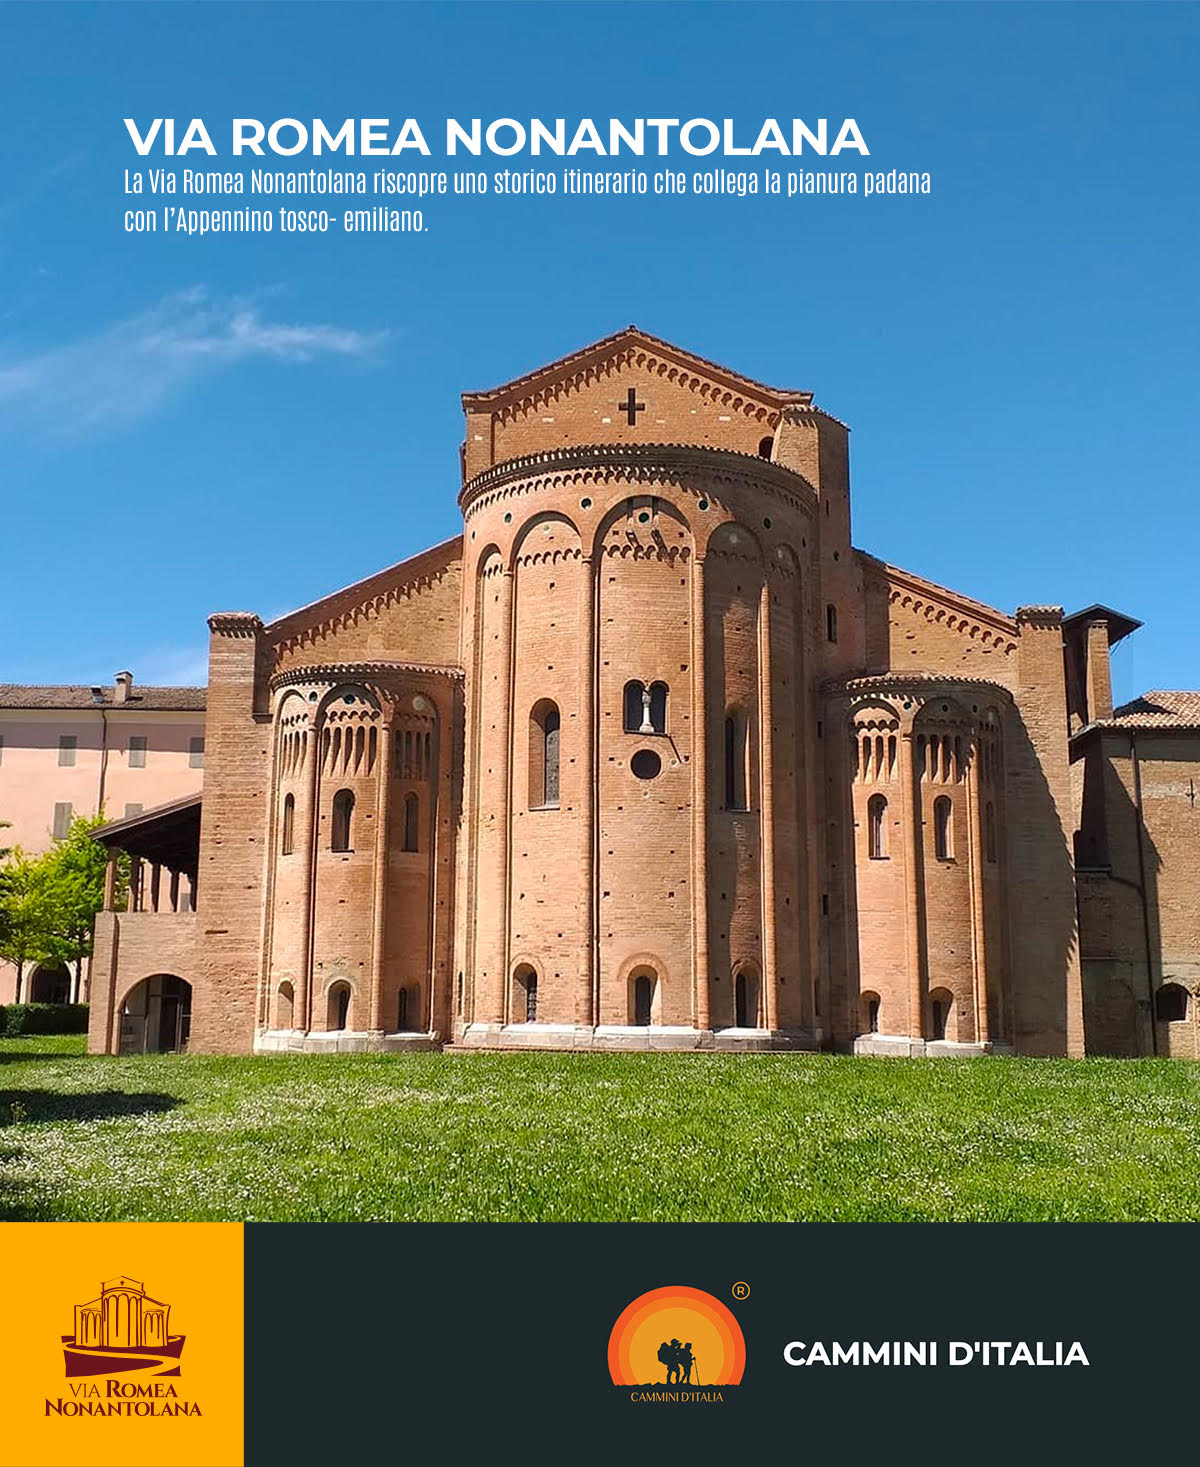 La Via Romea Nonantolana è all’interno del portale Cammini d'Italia